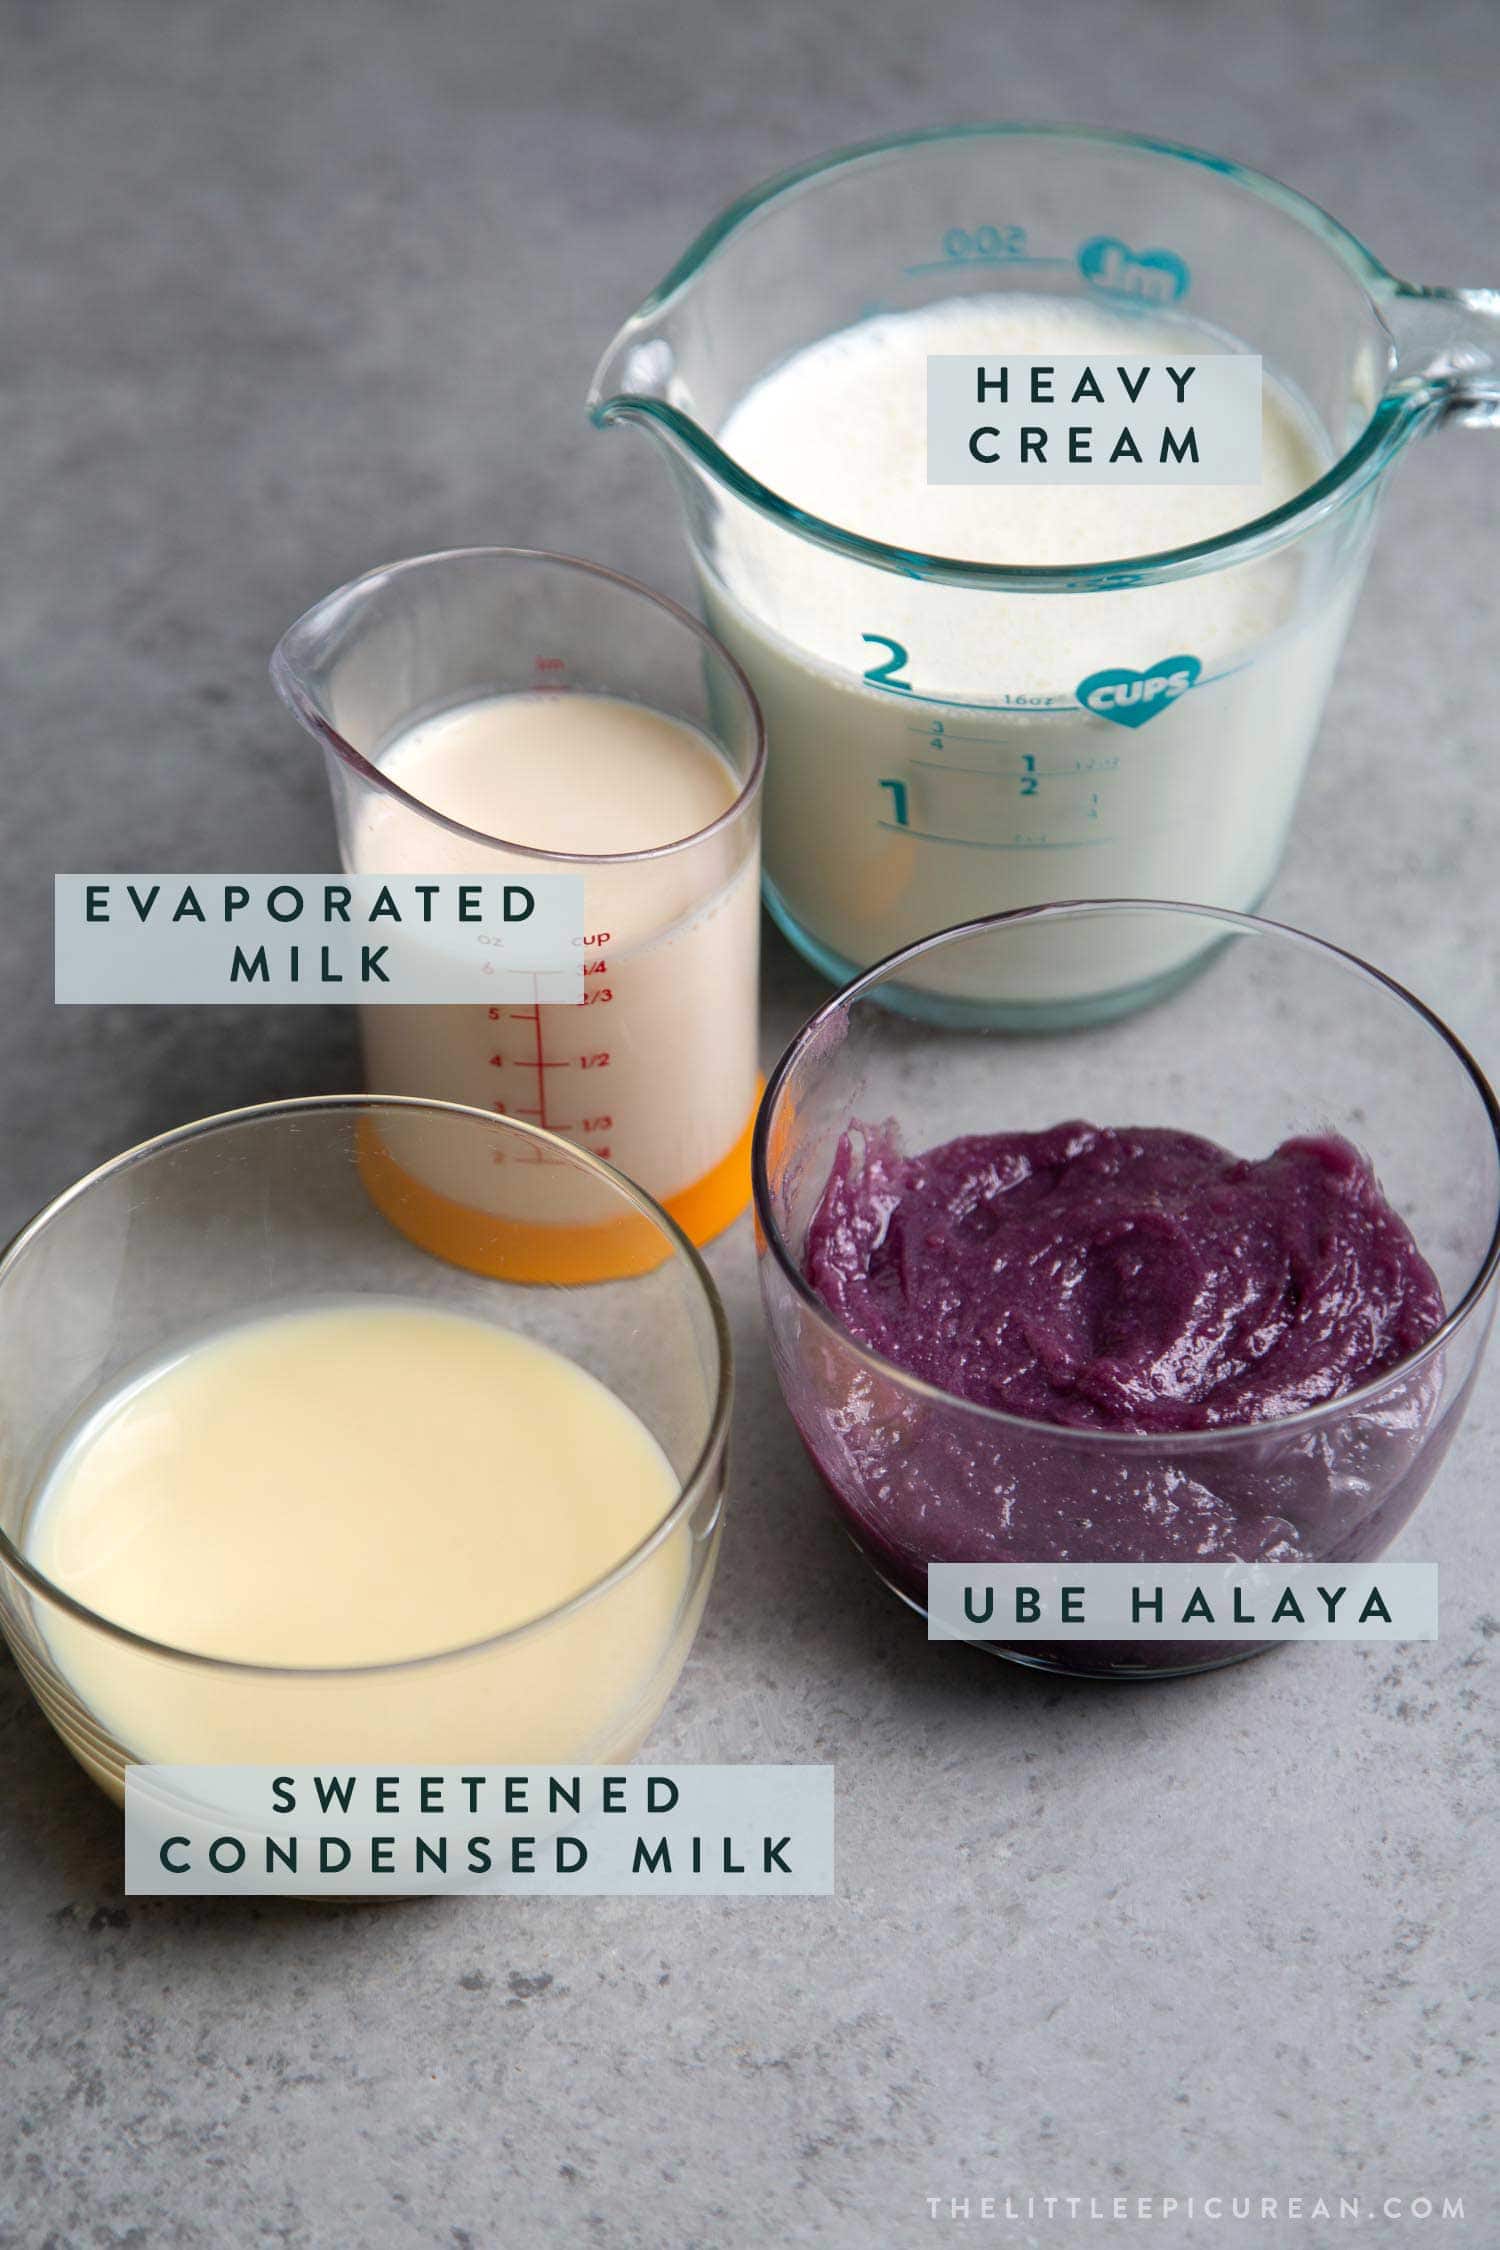 Ingredients needs for no churn ube (purple yam) ice cream.